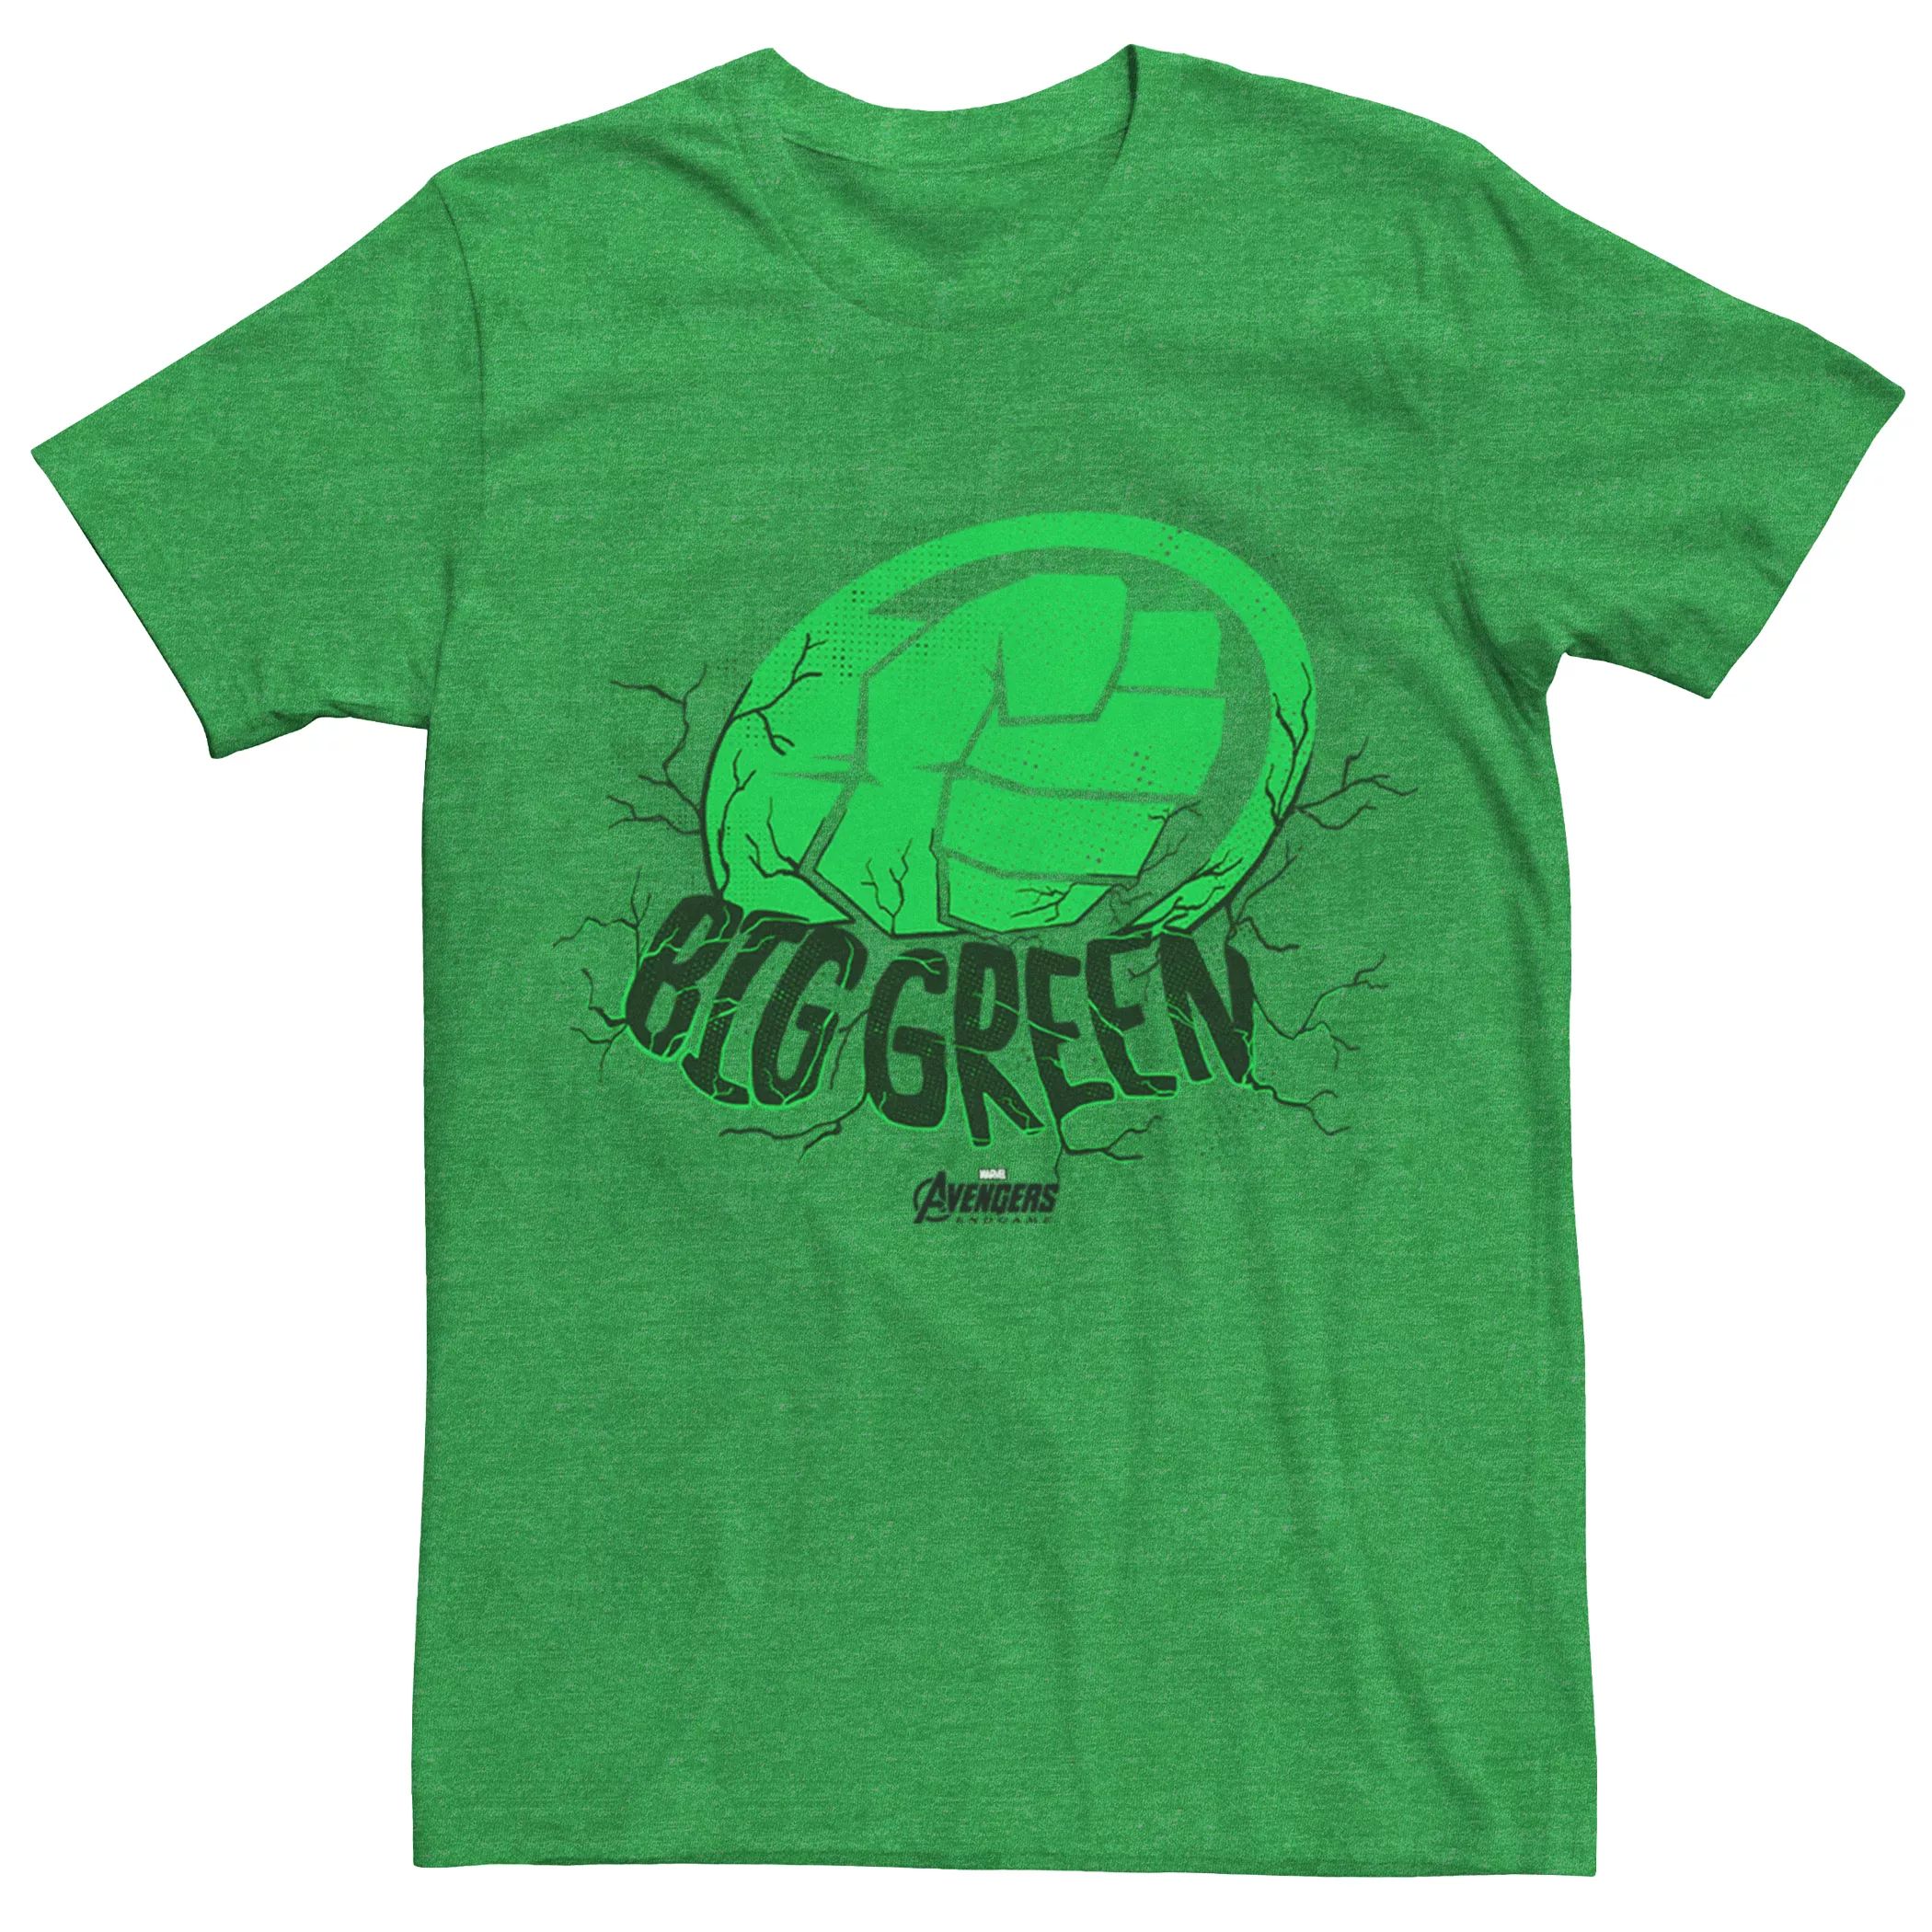 Мужская большая зеленая футболка Marvel Avengers Endgame Hulk Licensed Character мужская футболка marvel avengers endgame circle hulk licensed character